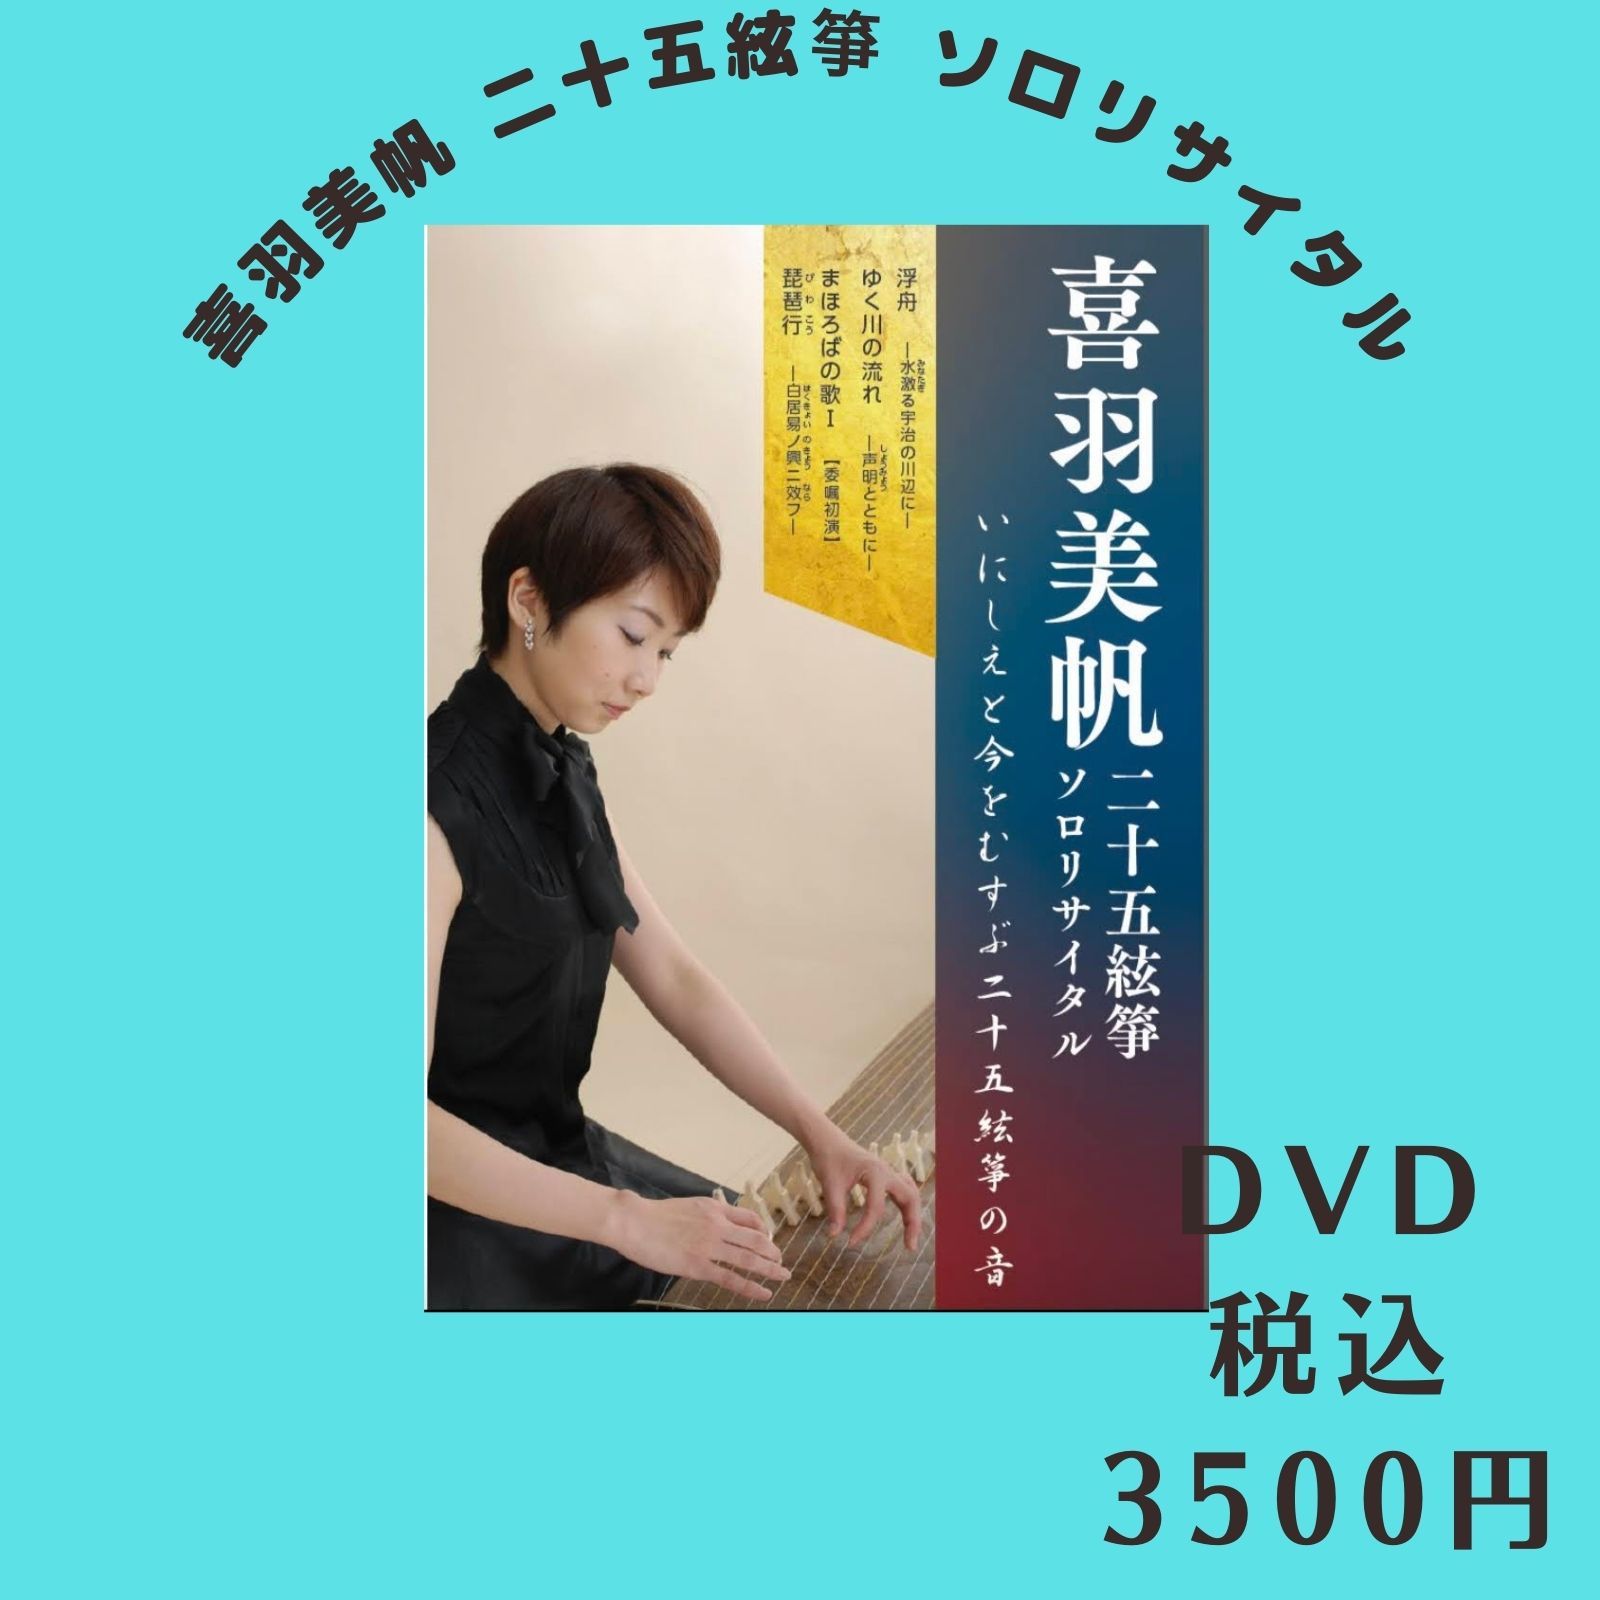 DVD 税込3500円 (1600 × 1600 px)